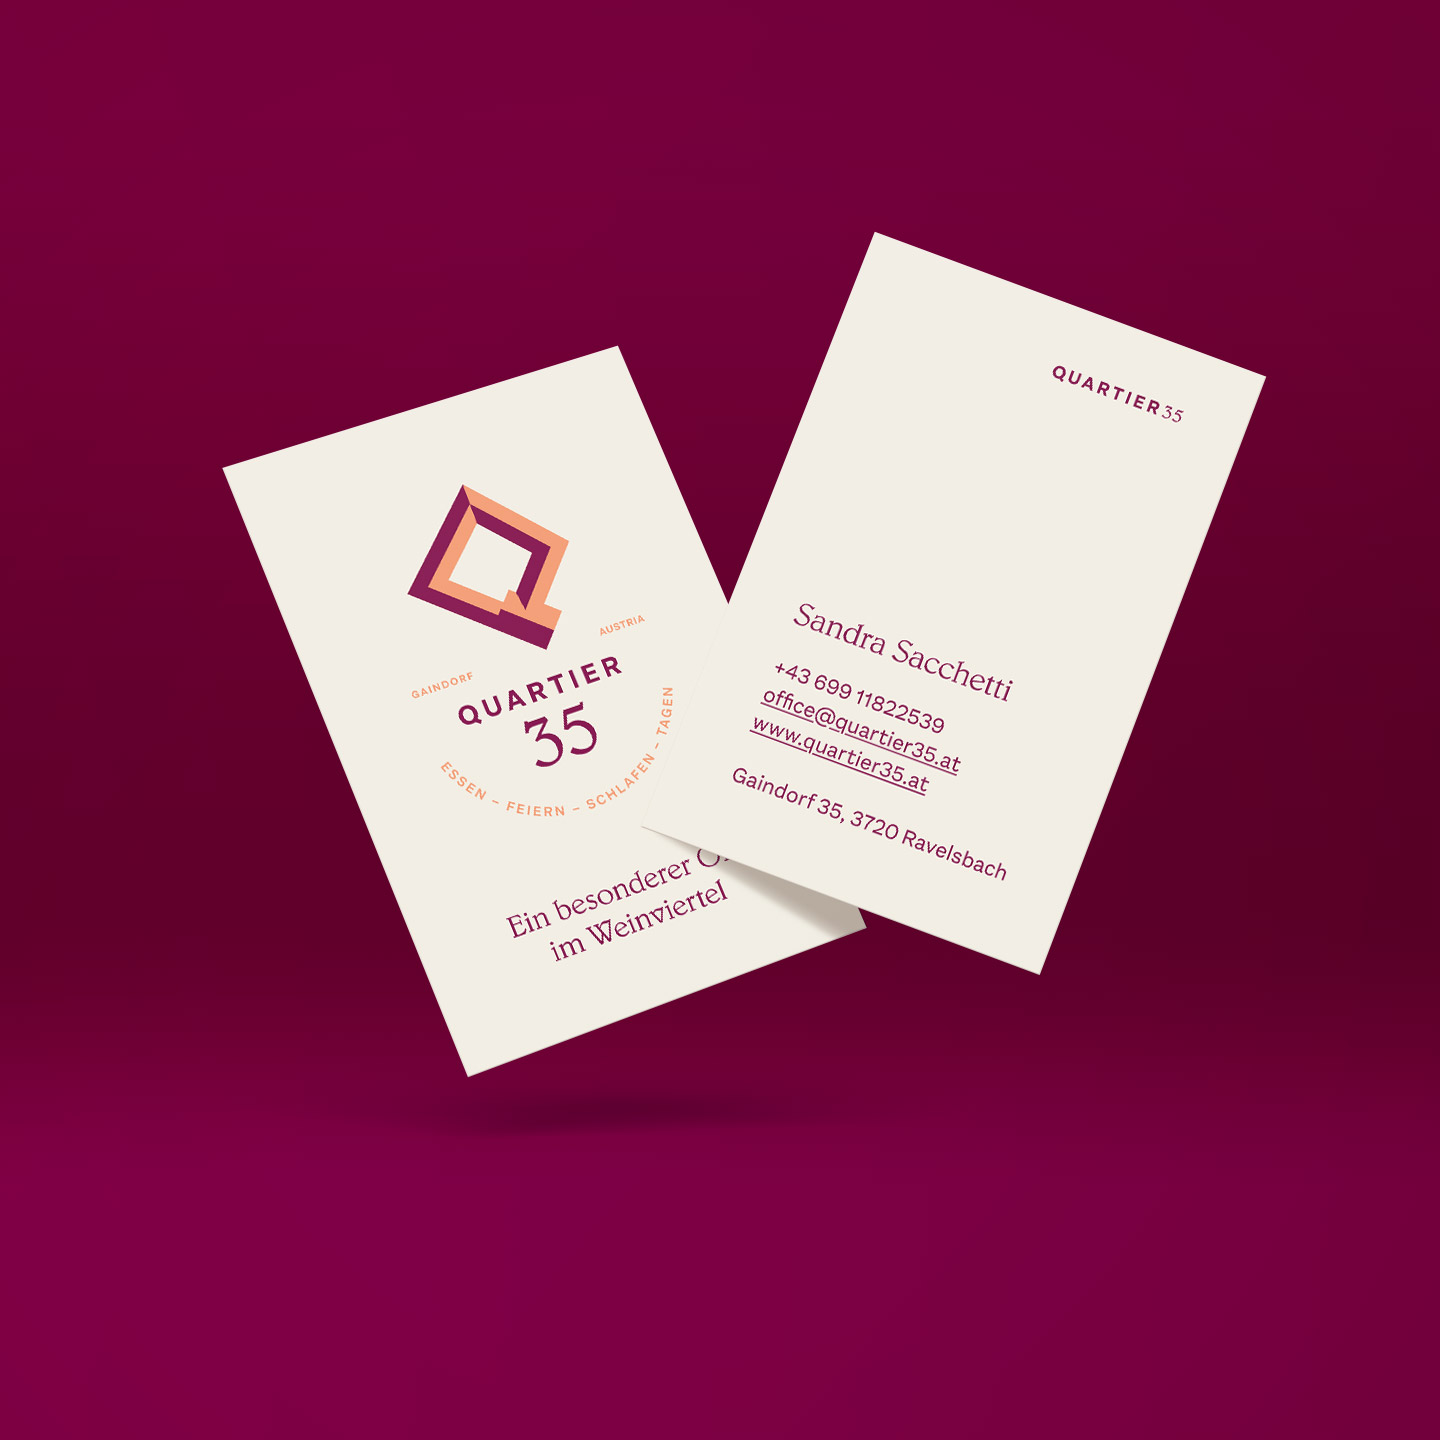 Business card design for Quartier35